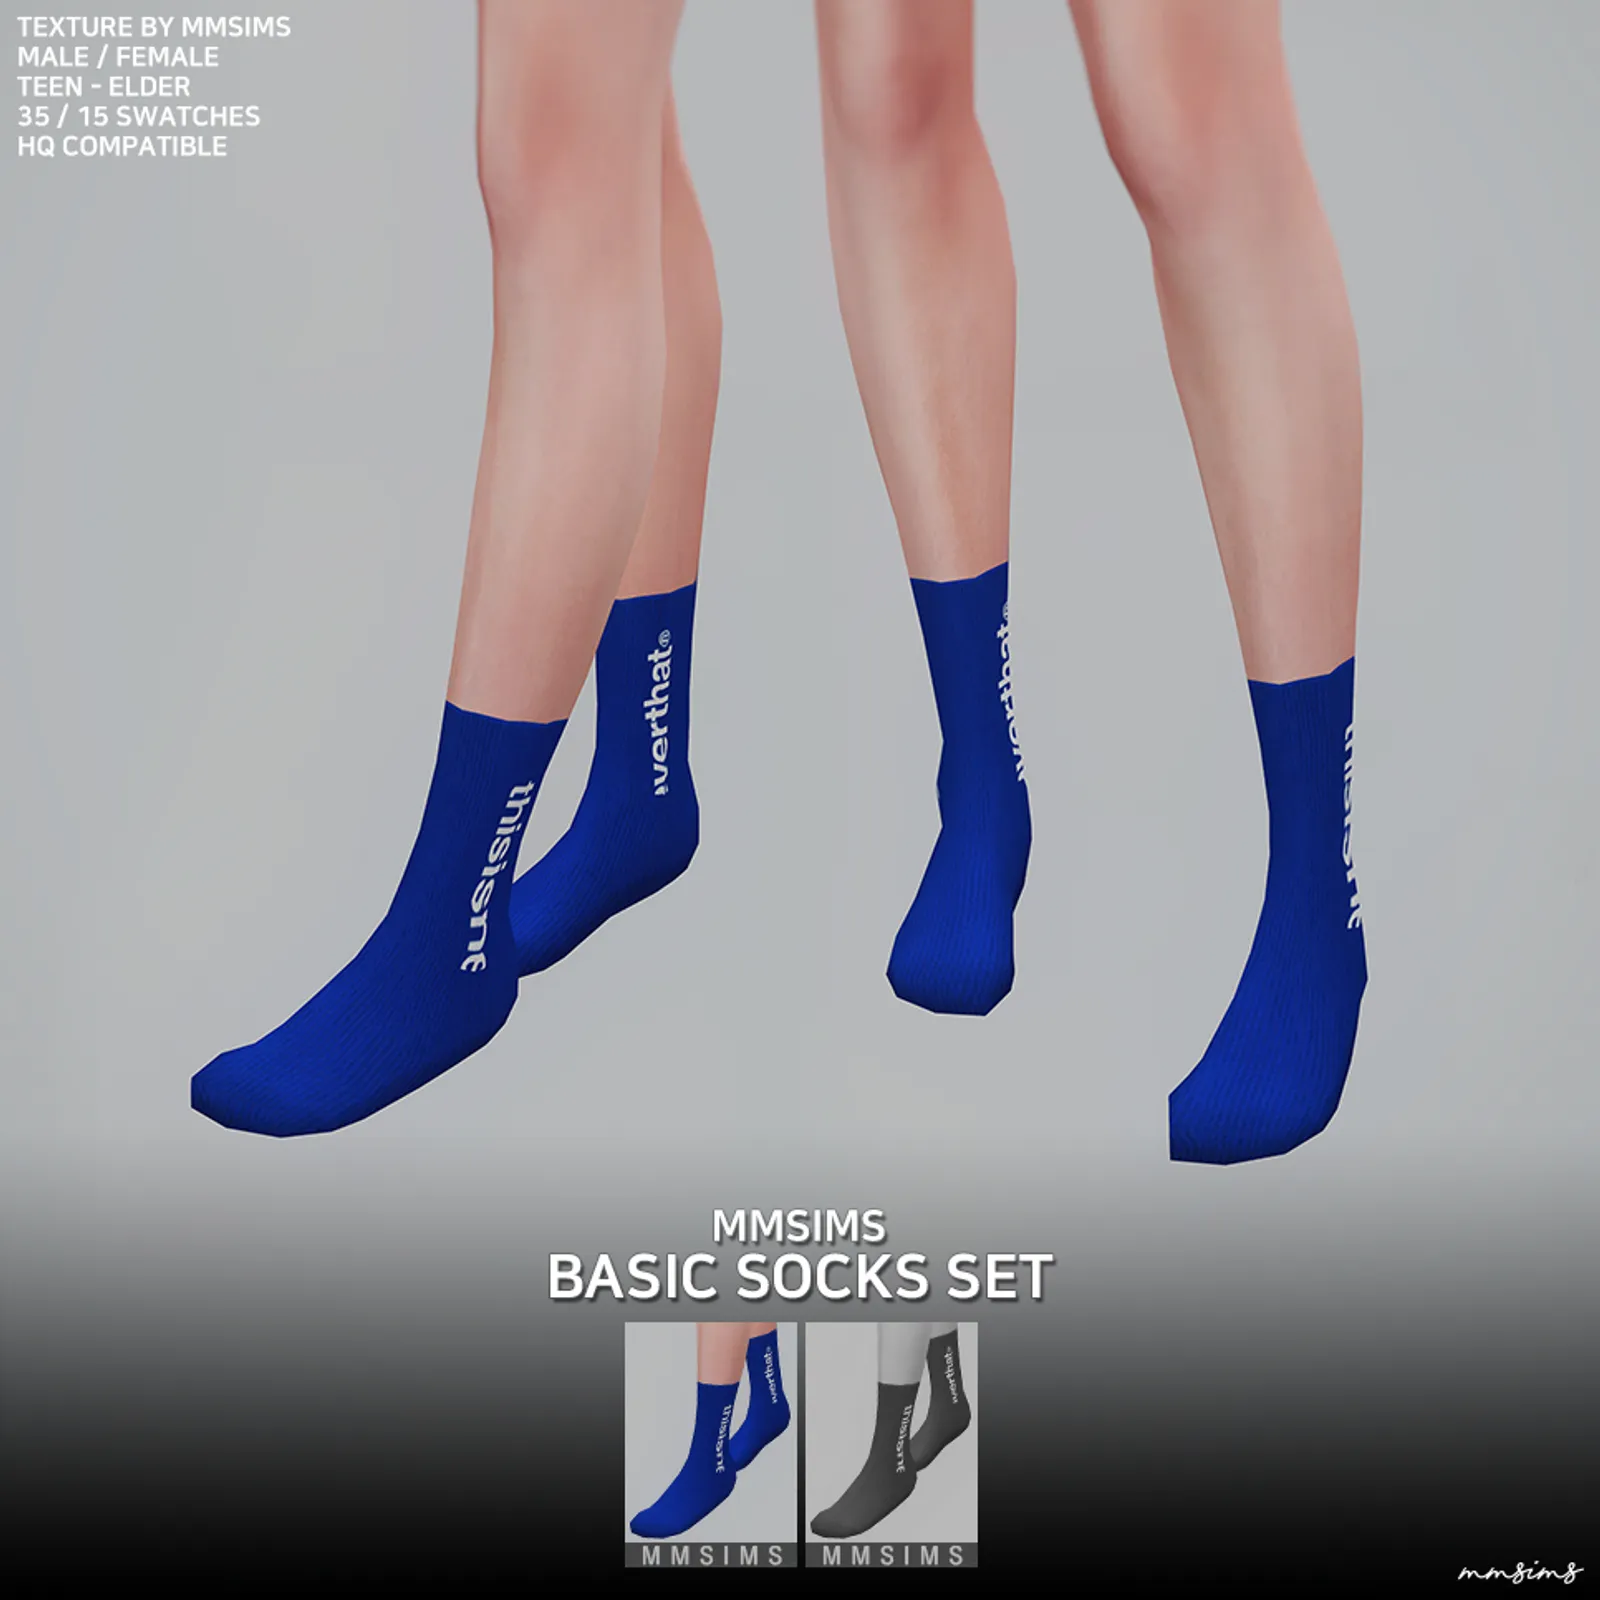 MMSIMS Basic Socks Set